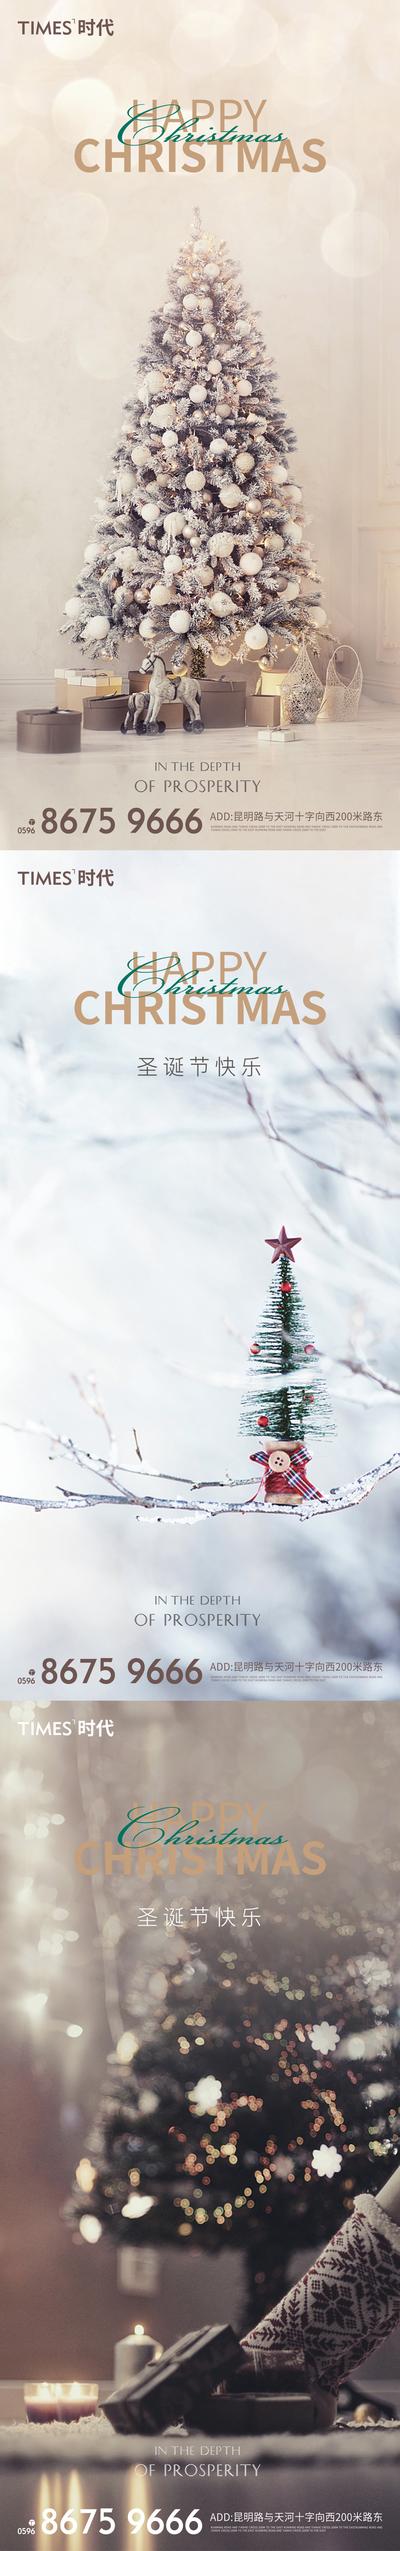 南门网 海报  房地产  系列  圣诞节  公历节日  圣诞树   礼品  雪景